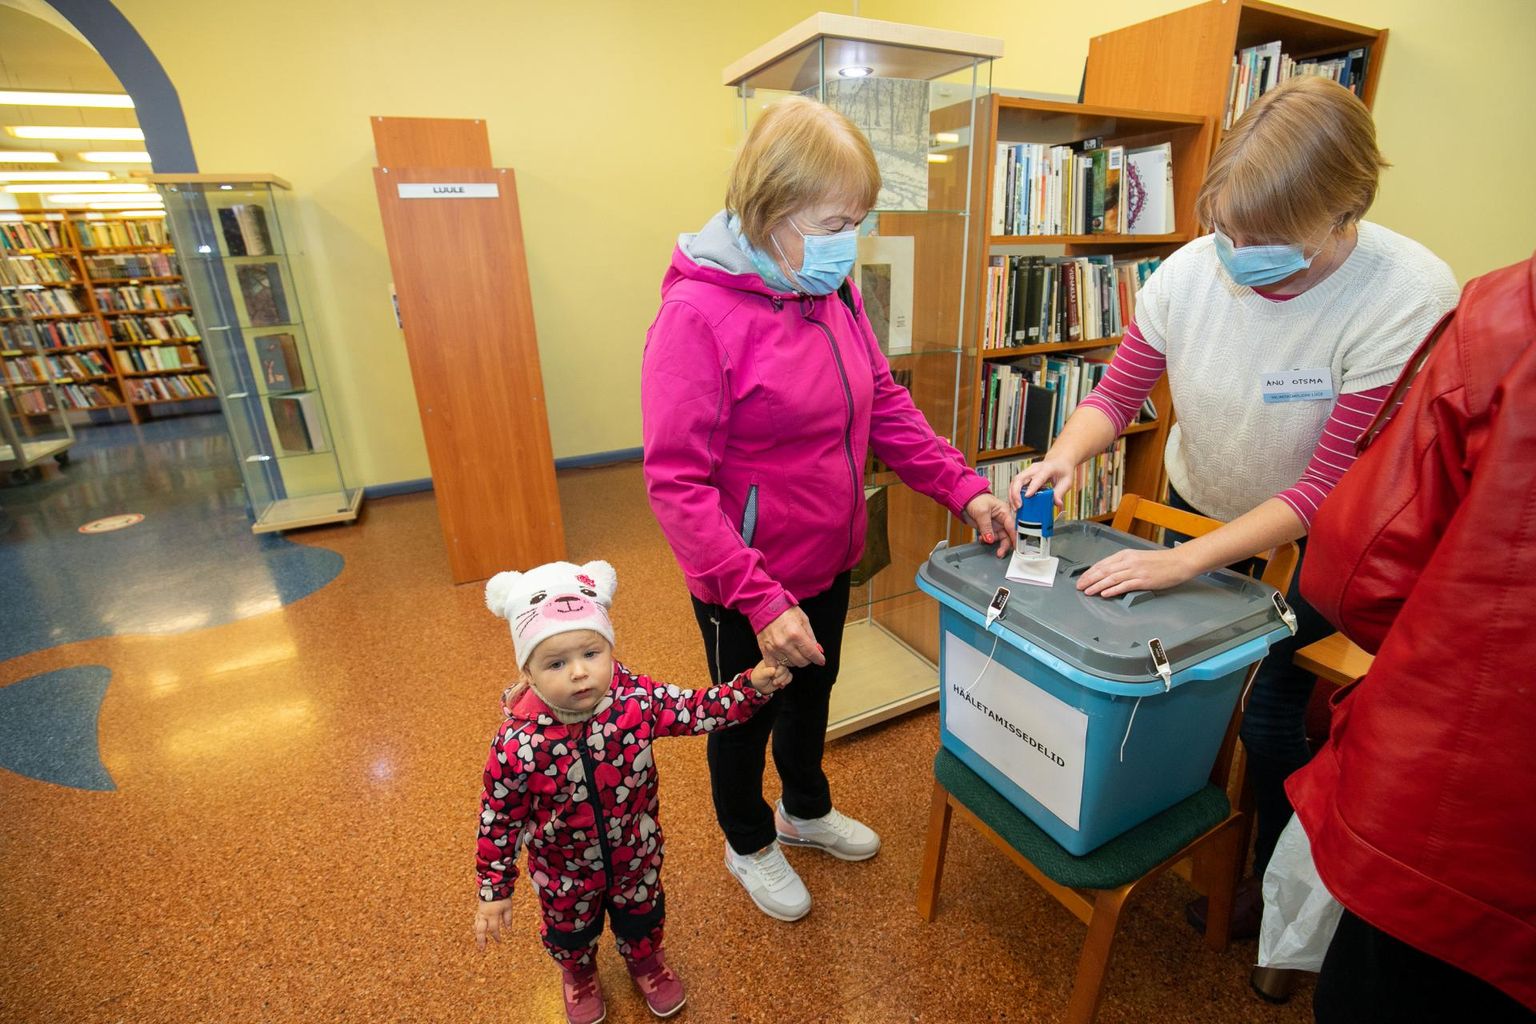 Esimesena õnnestus valimissedel hääletuskasti libistada Rakvere elanikul Aino Rosinal, kes oli tulnud valima koos lapselaps Lileeniga.